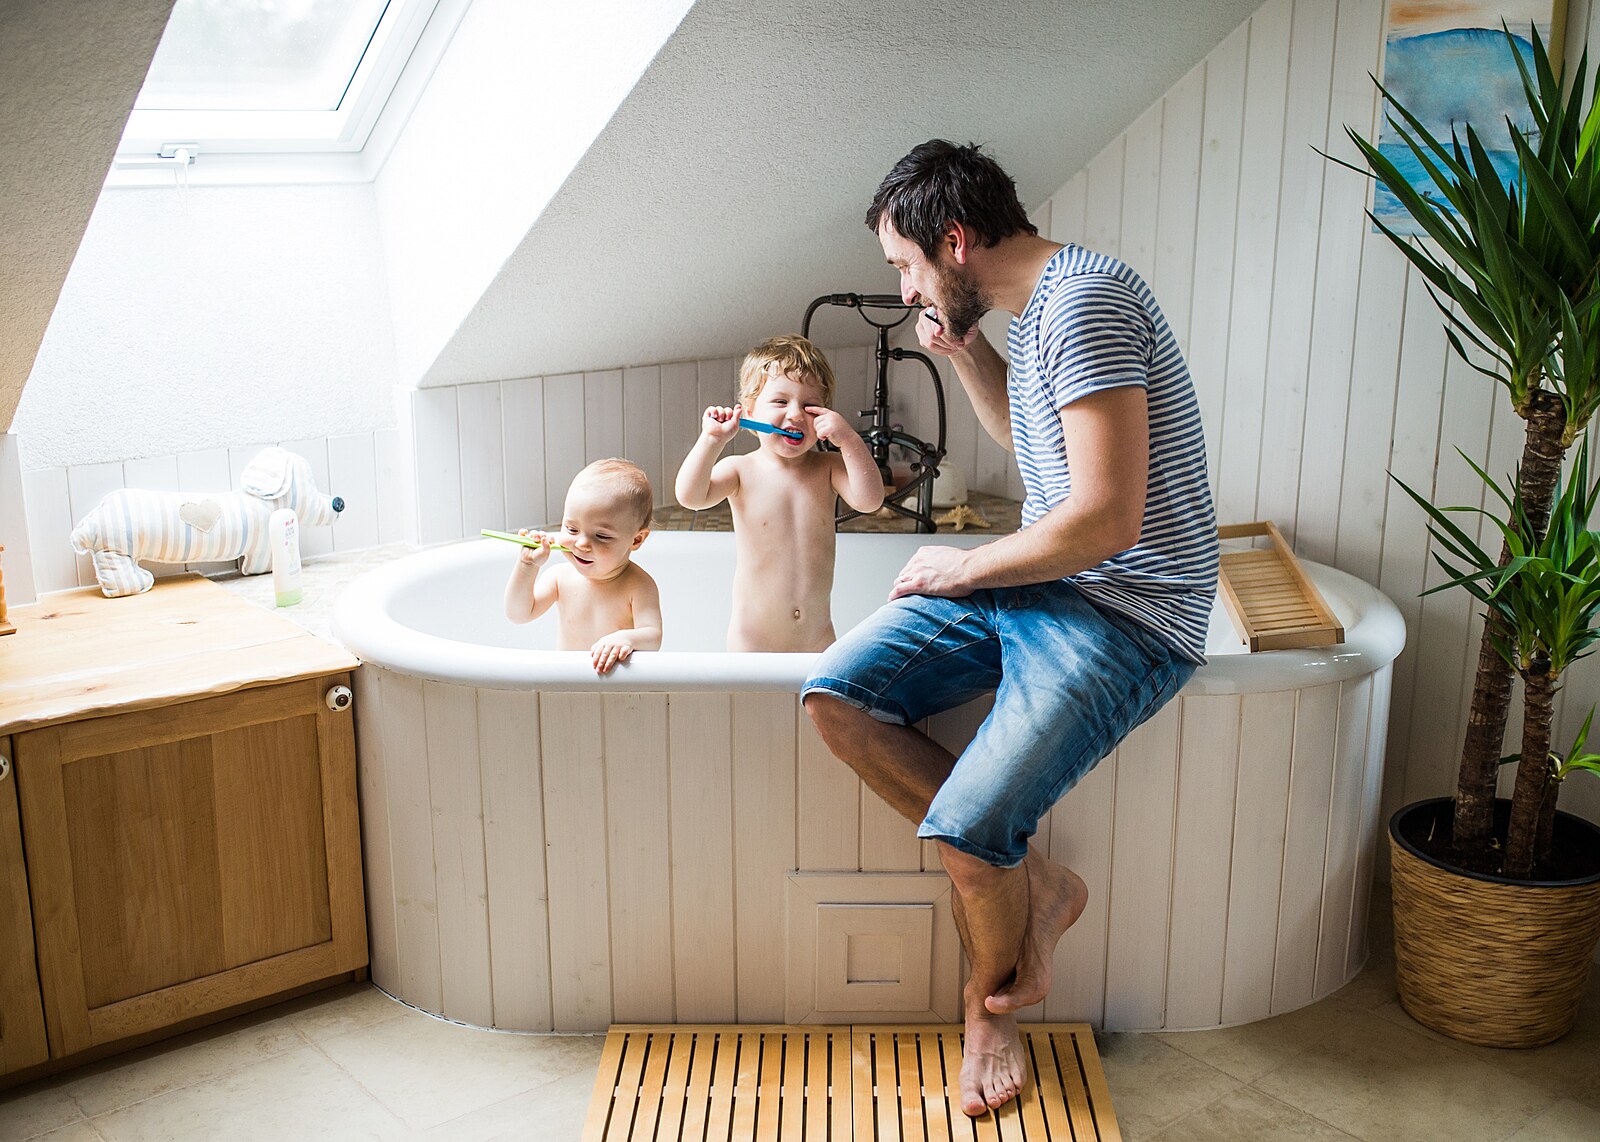 Daughter bath. Ванная для семьи с детьми. Ванная с двумя малышами. Дети в ванной с папой. Ванная с родителями.